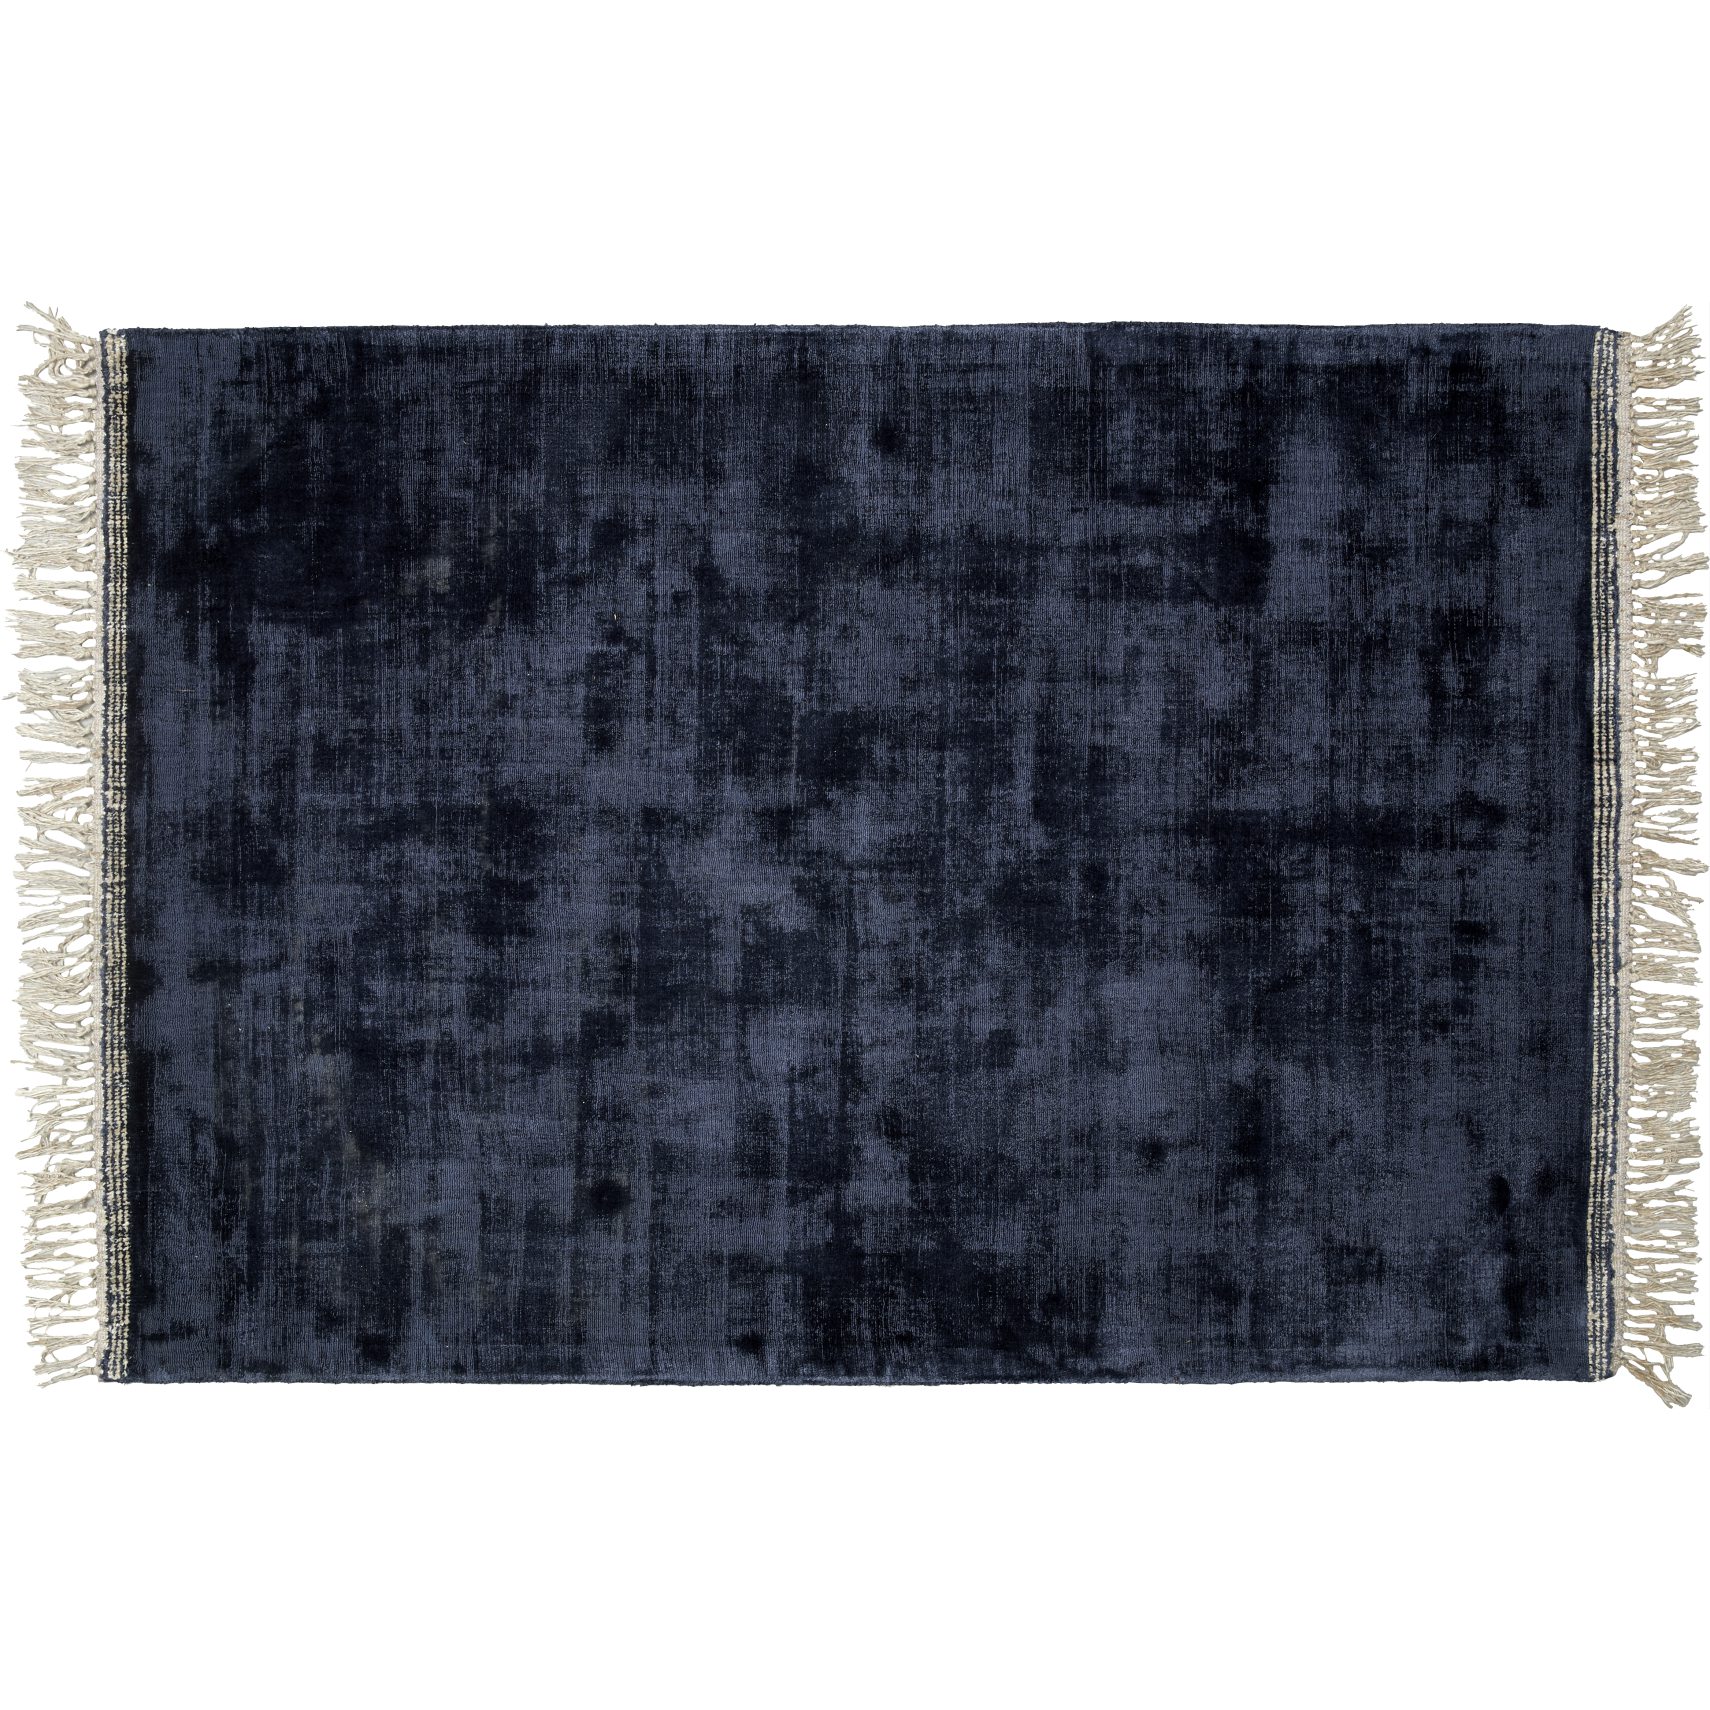 Topaz Tuftad matta 170 x 240 cm - Mörkblå ull/viskos, stickmönster/prickmönster och off-white fransar